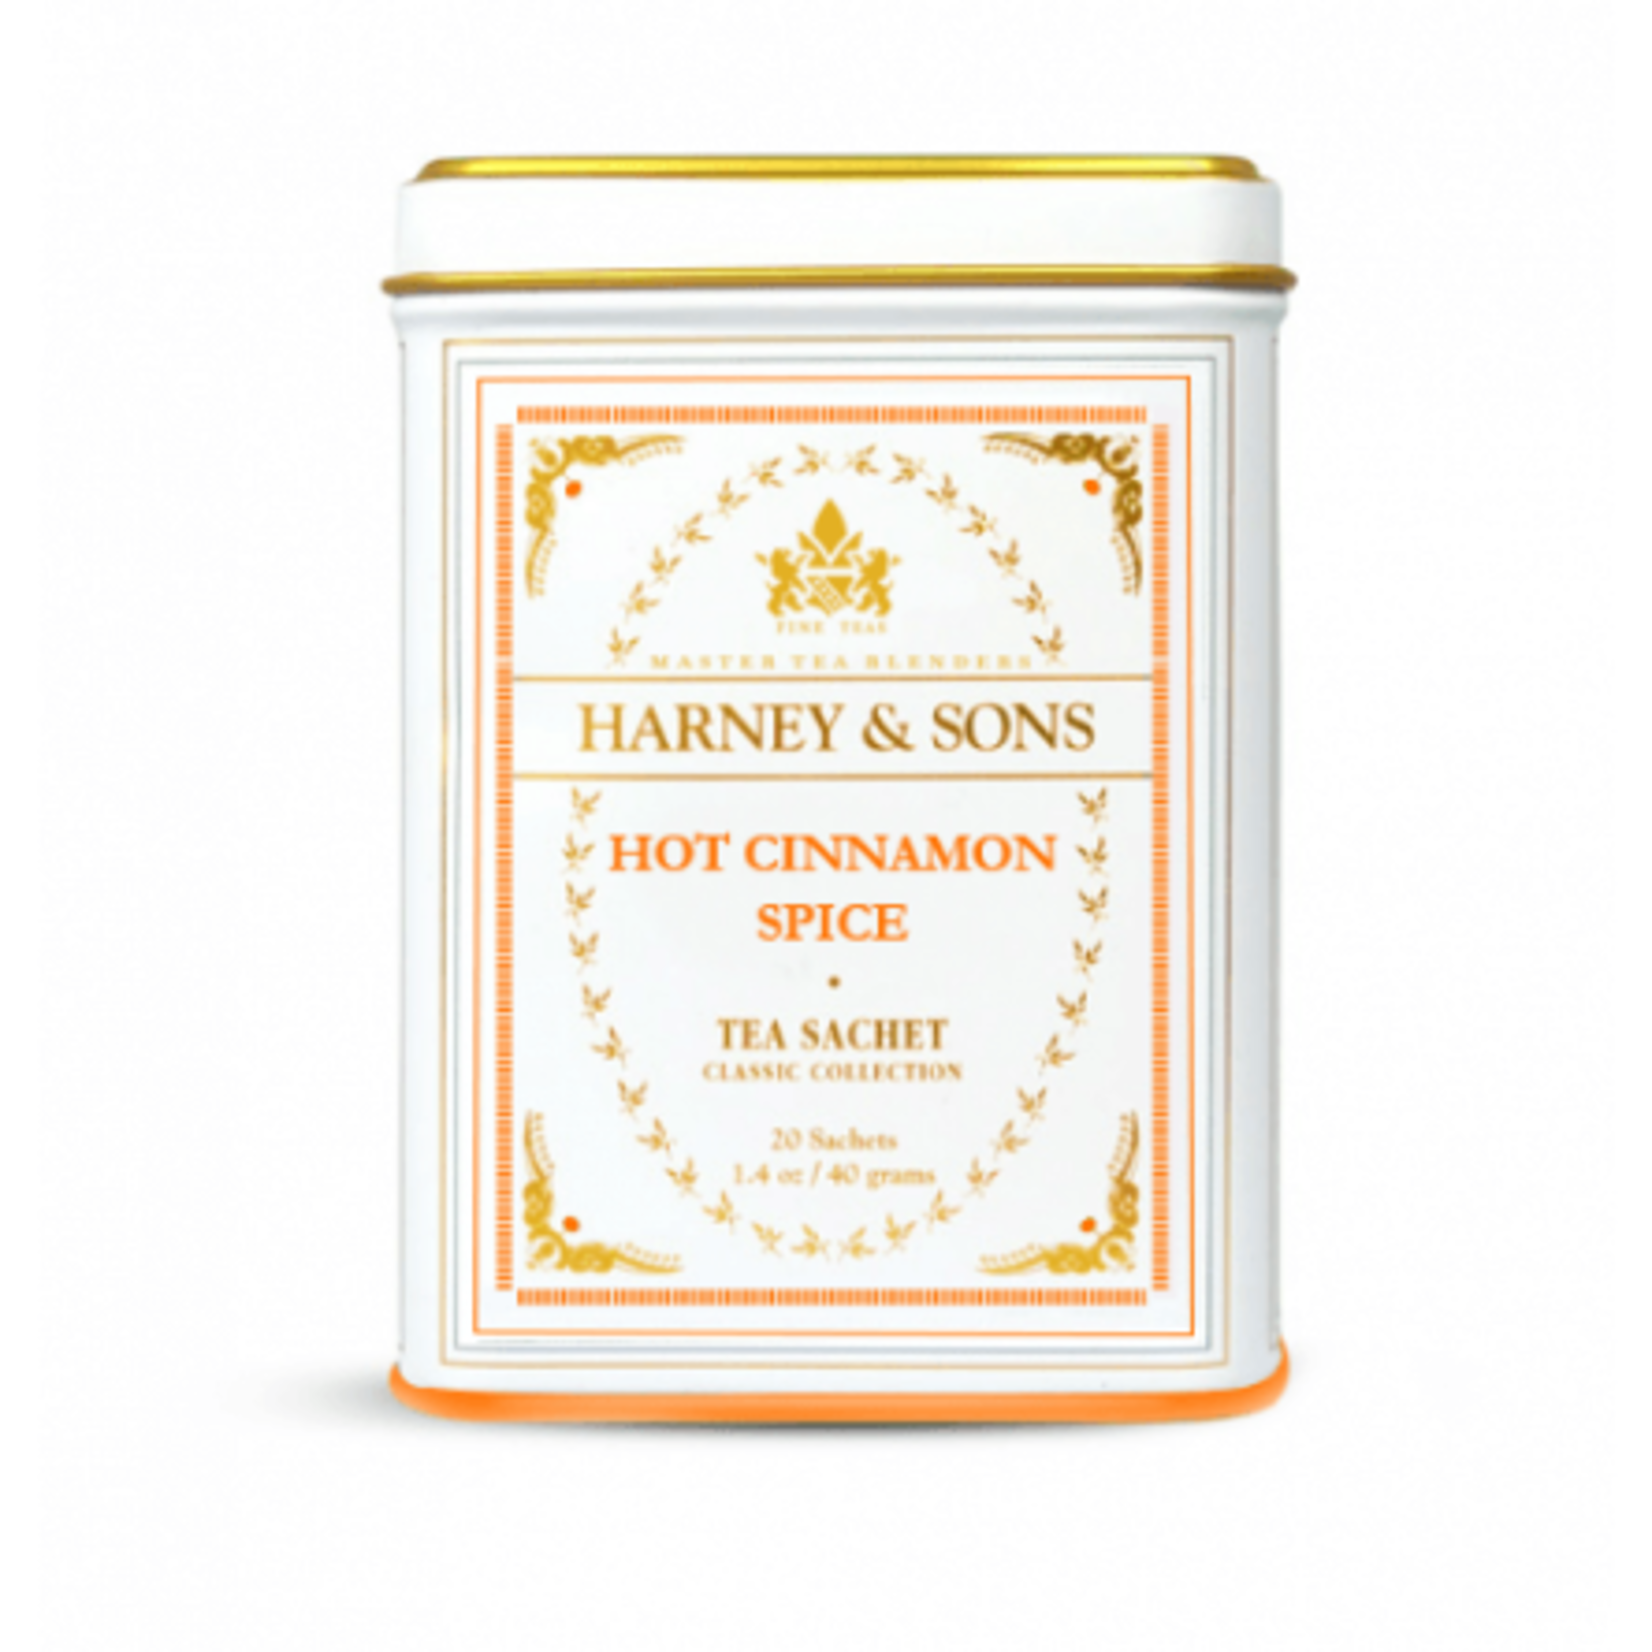 Harney & Sons Hot Cinnamon Spice Black Tea, Tin